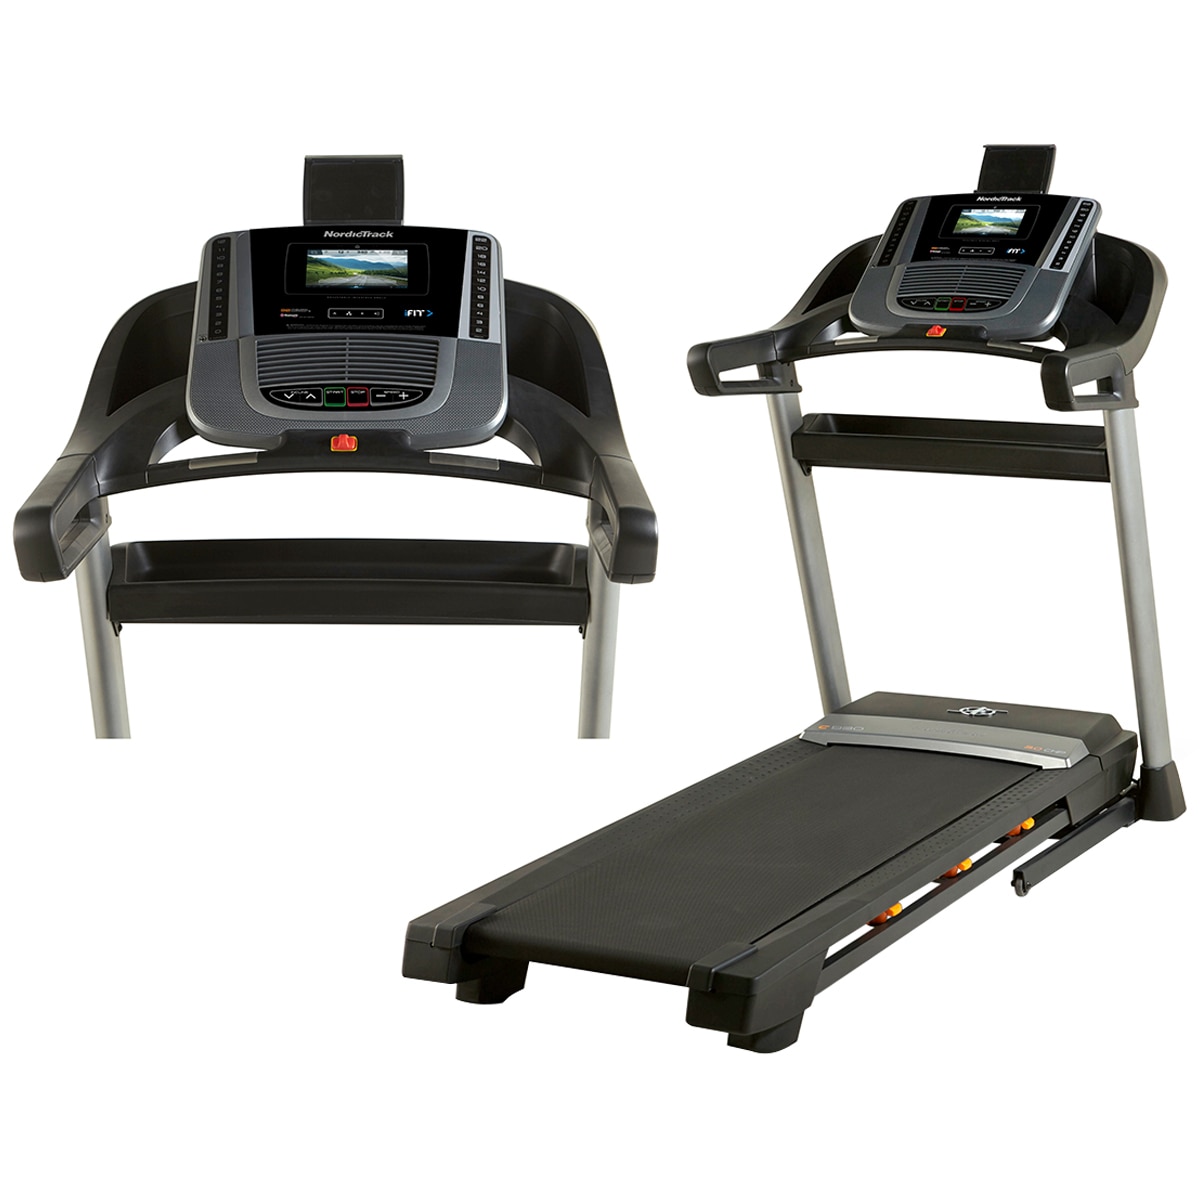 Nordictrack Treadmill MDL: NETL15818  C990